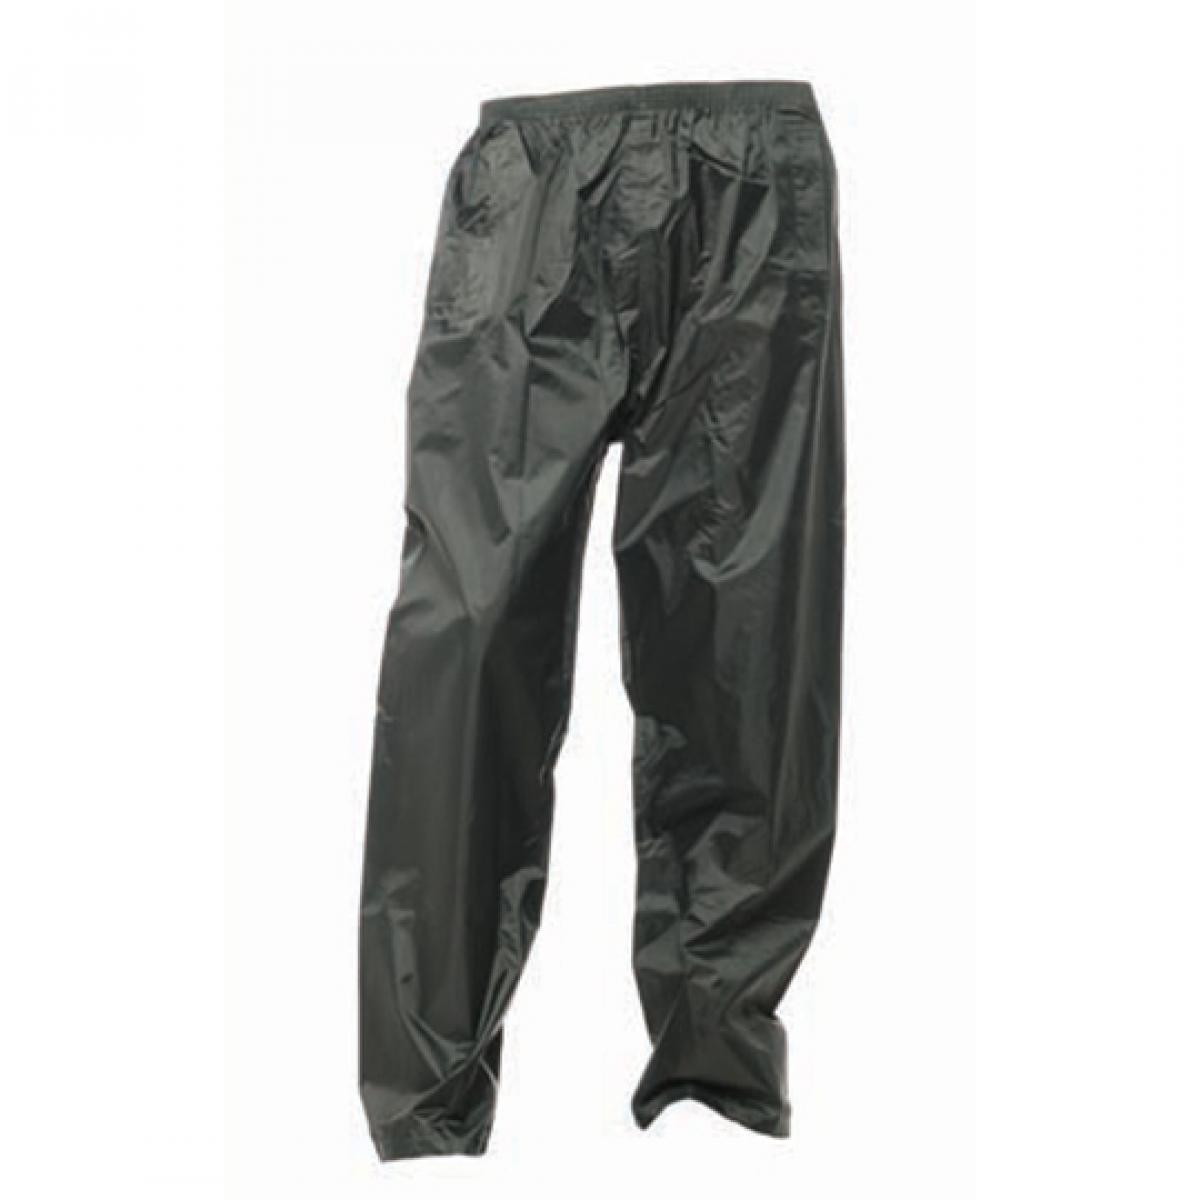 Hersteller: Regatta Herstellernummer: TRW308 Artikelbezeichnung: Pro Stormbreak Trousers / Überhose Farbe: Dark Olive